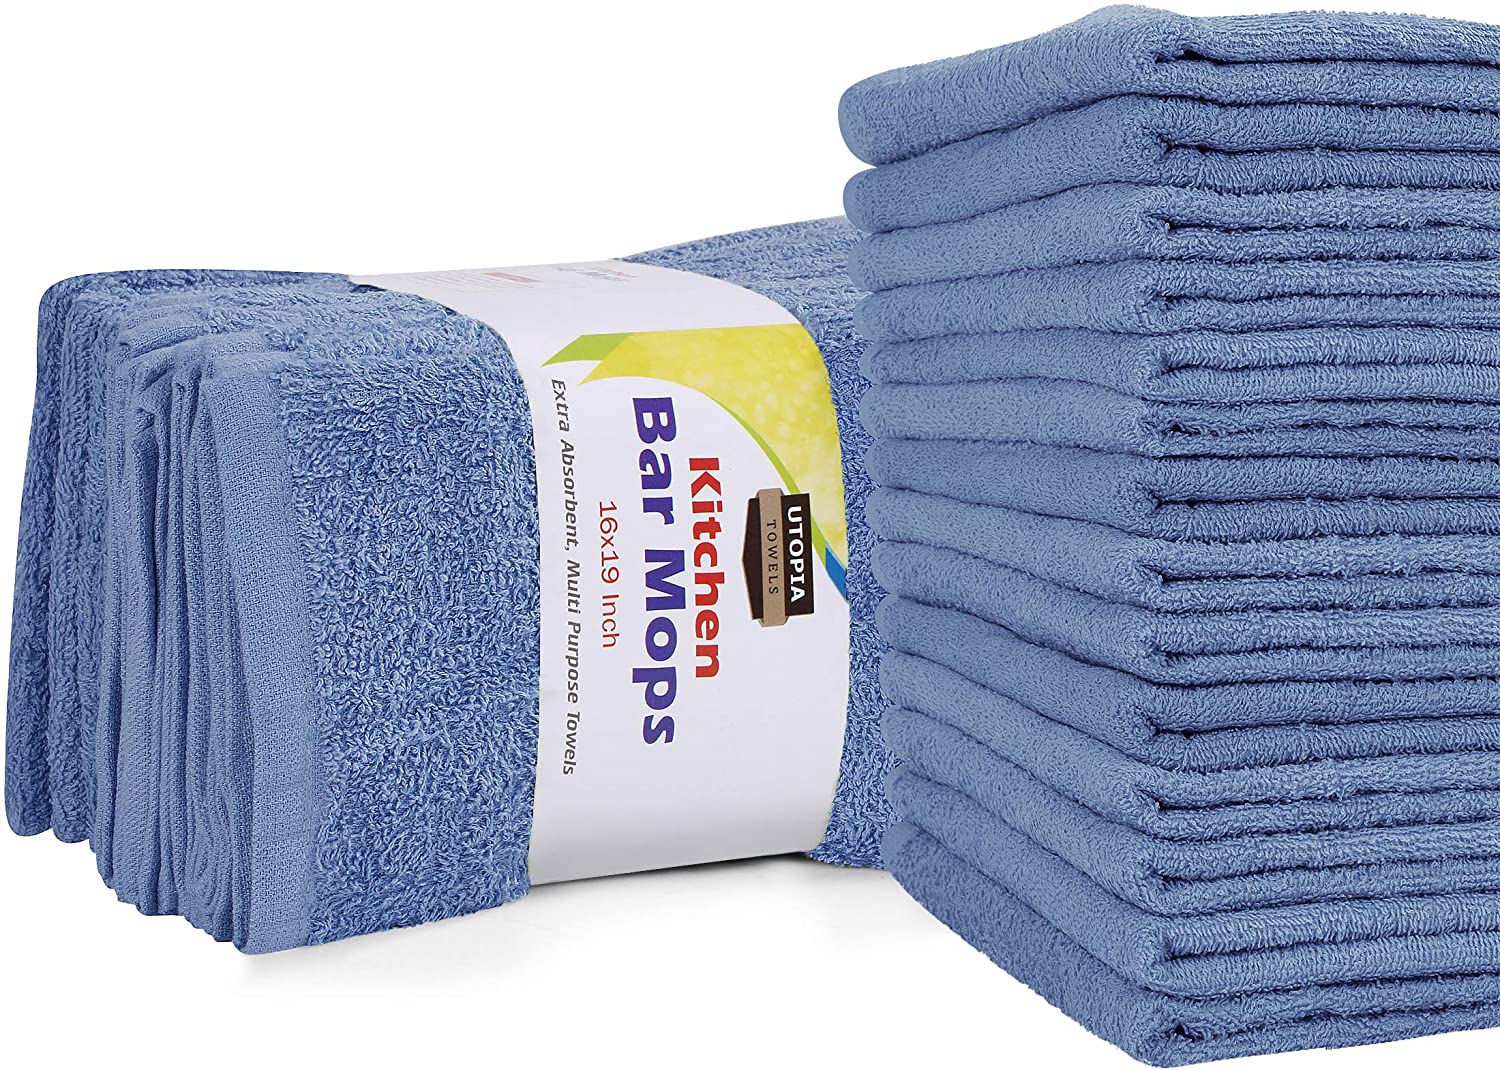 Bar Mop Towel - 32 oz. Premium Weight